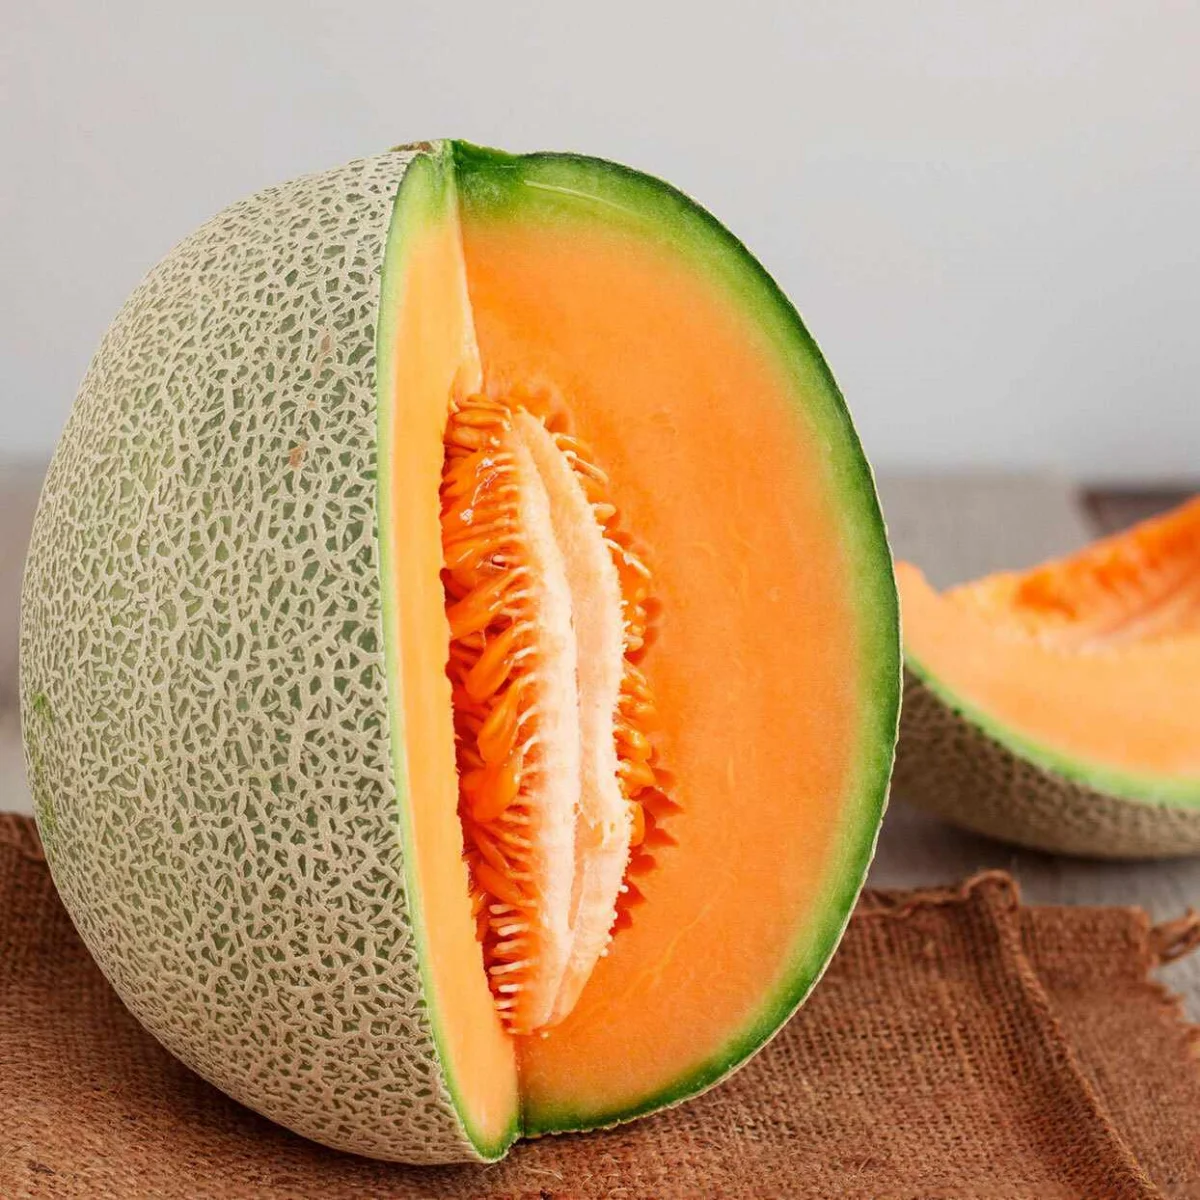 comment savoir si le melon est assez mur